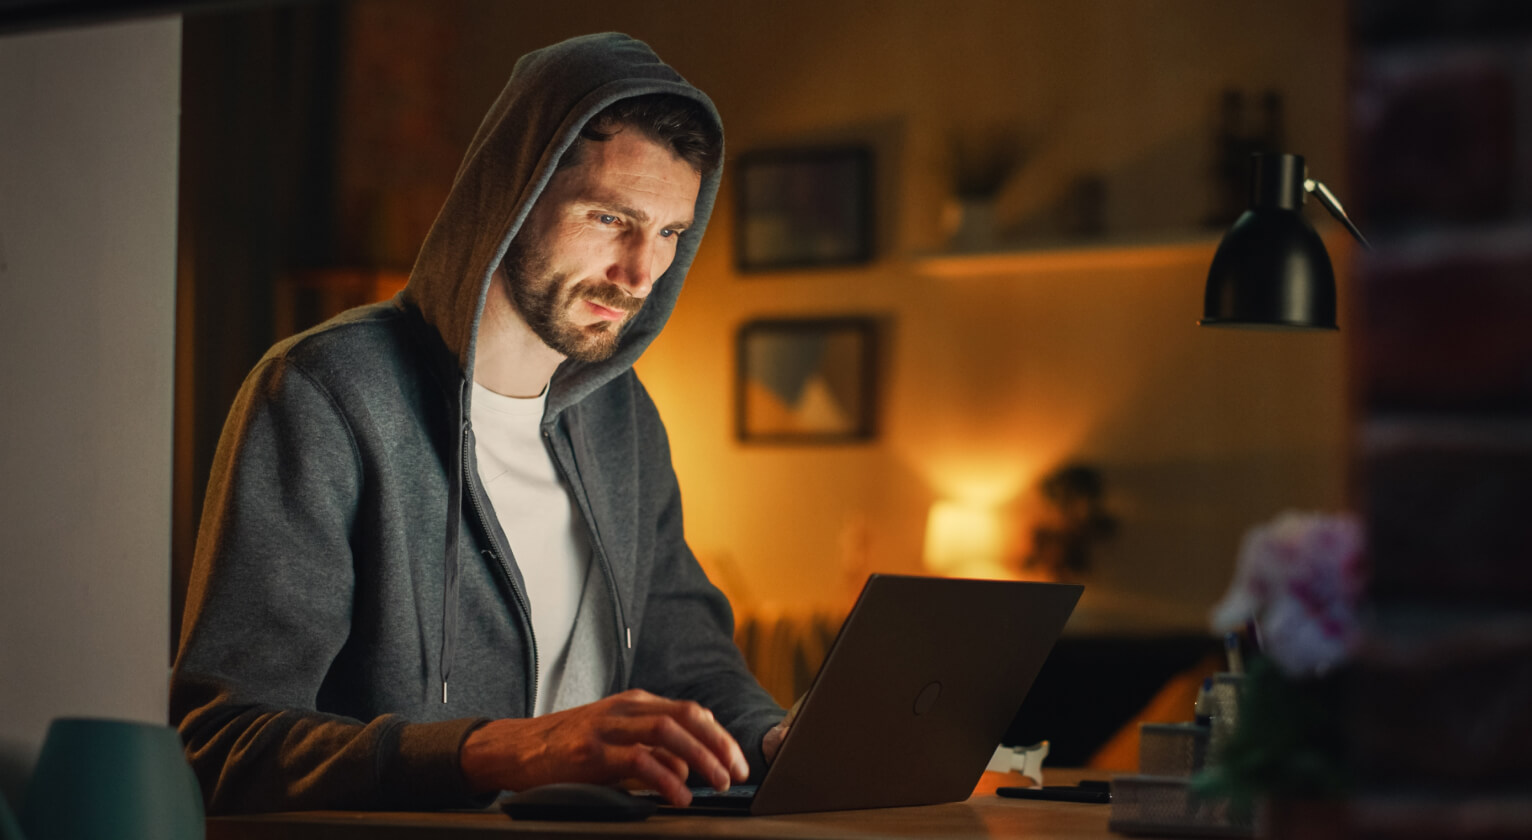 Immagine di un giovane uomo che opera su Forex su una piattaforma di trading online, in un ambiente rilassato.
